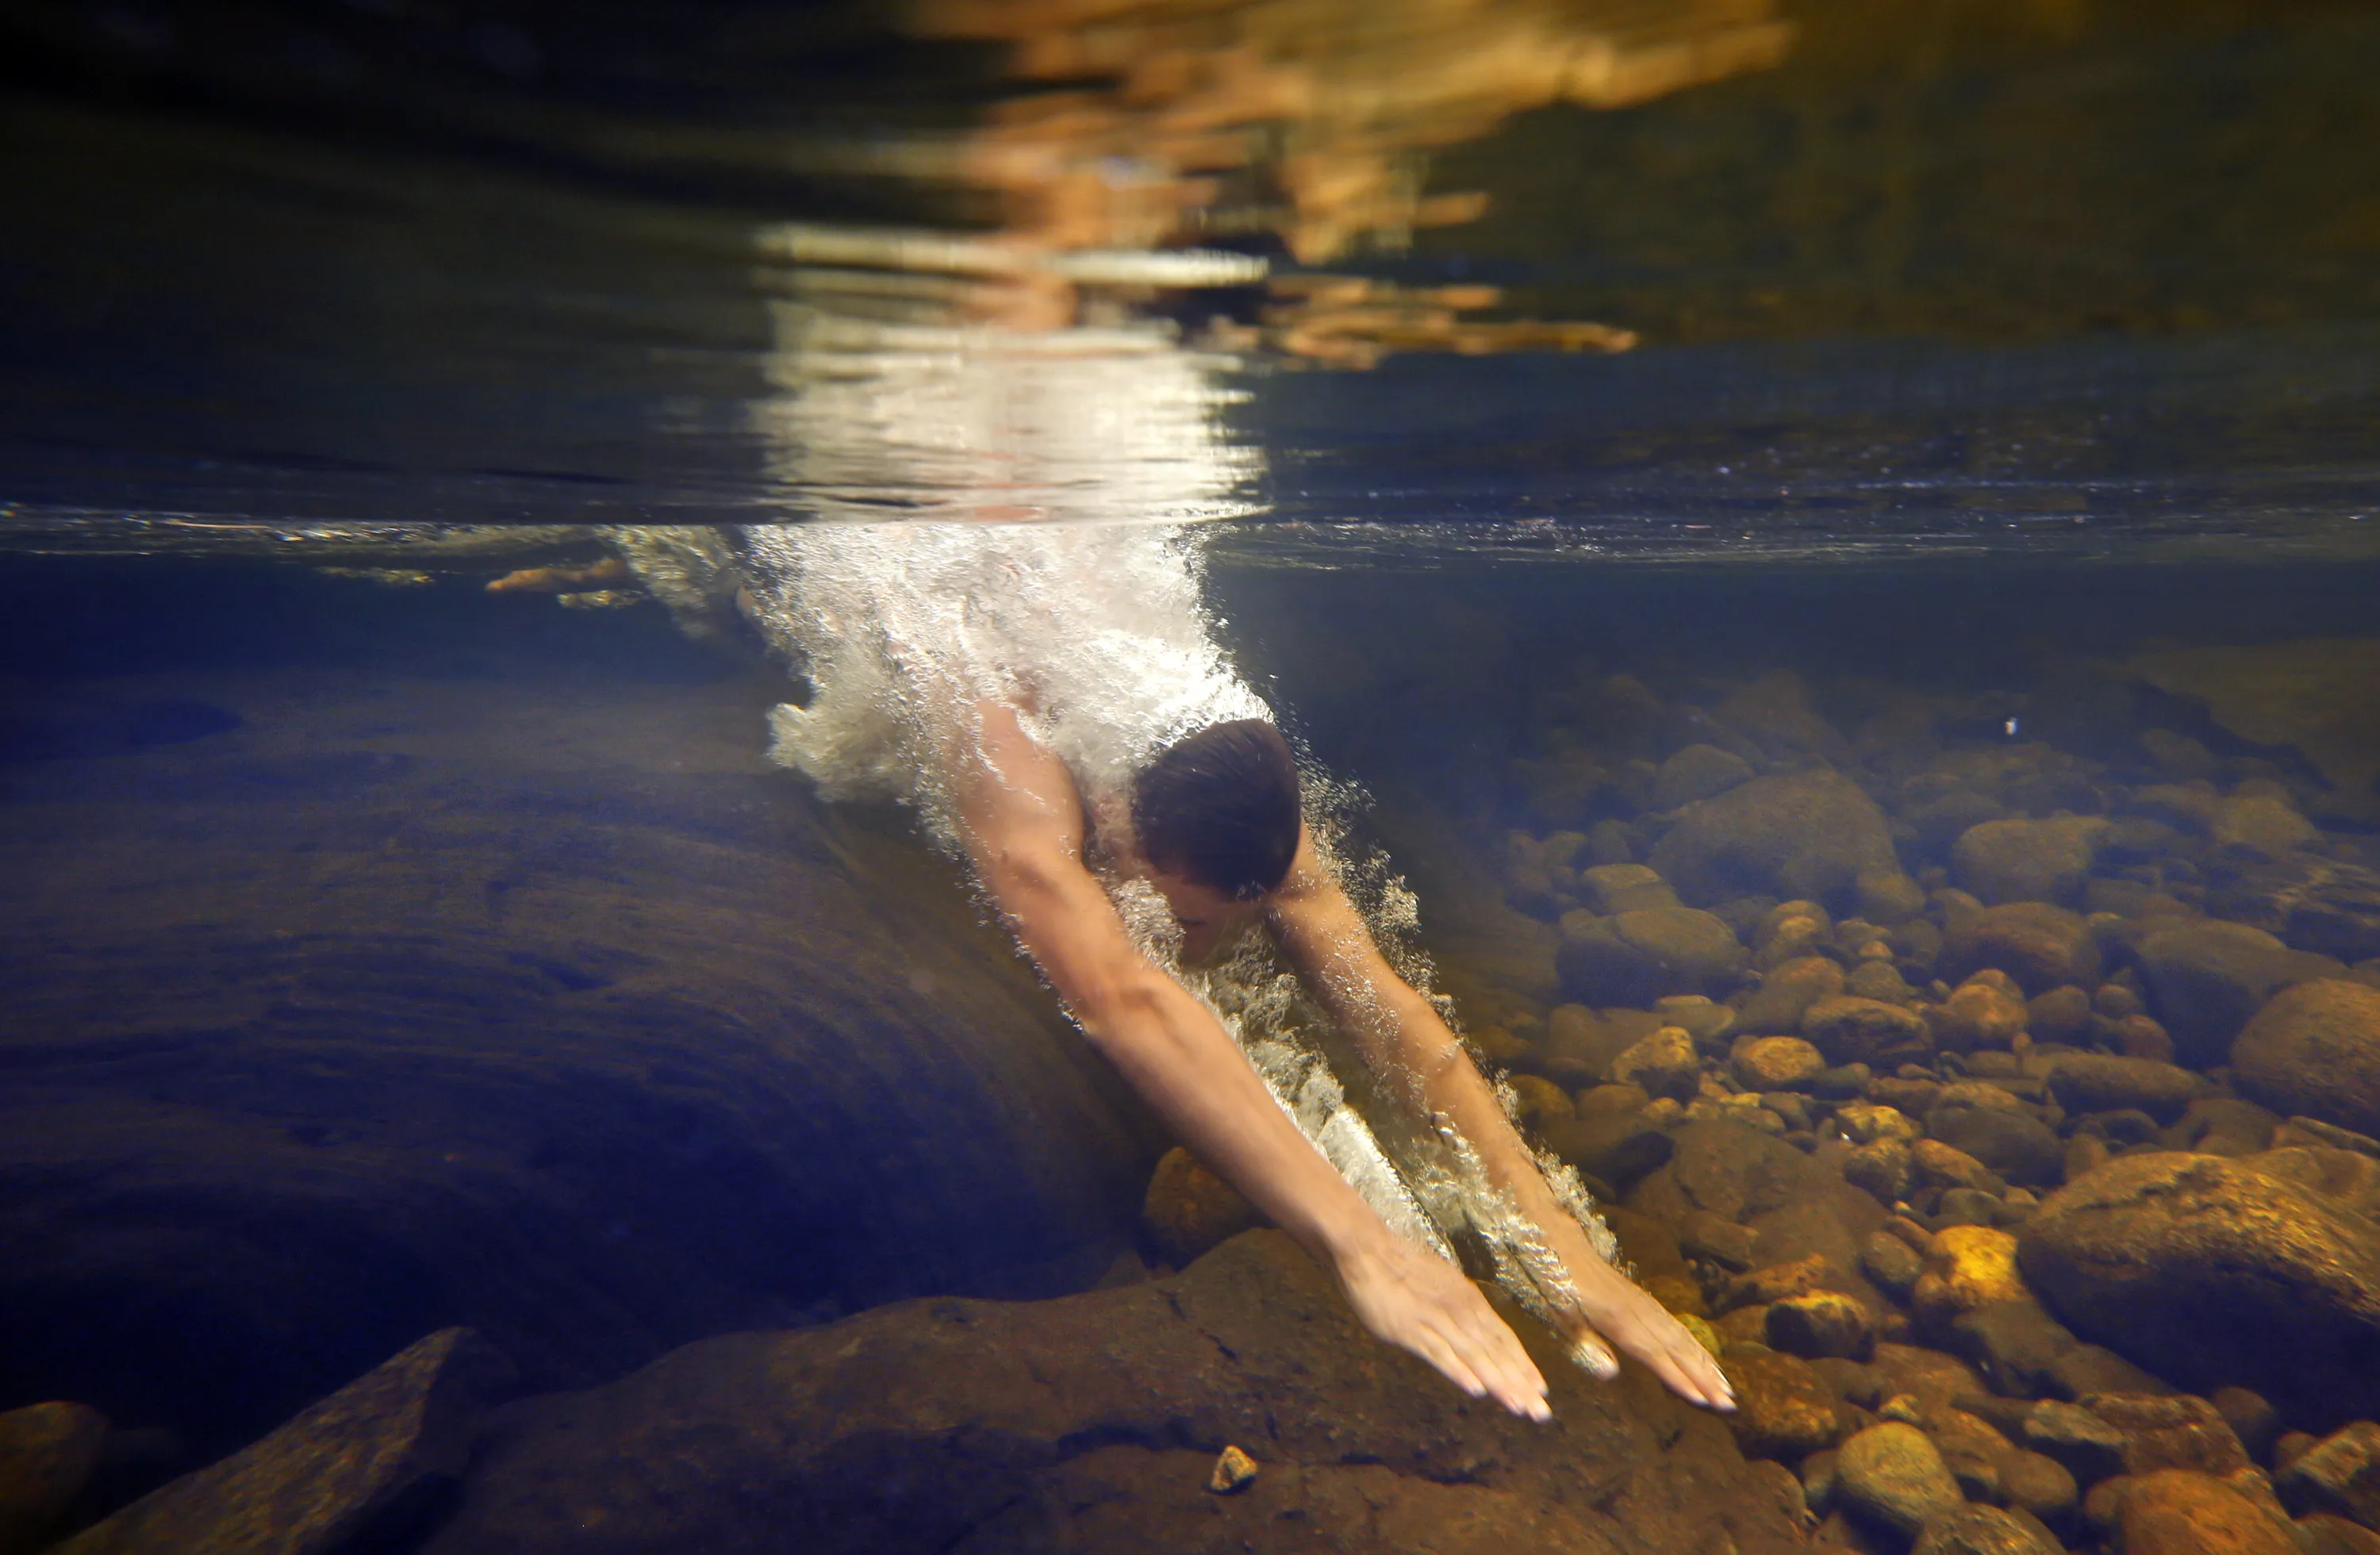 Человек плывет по реке